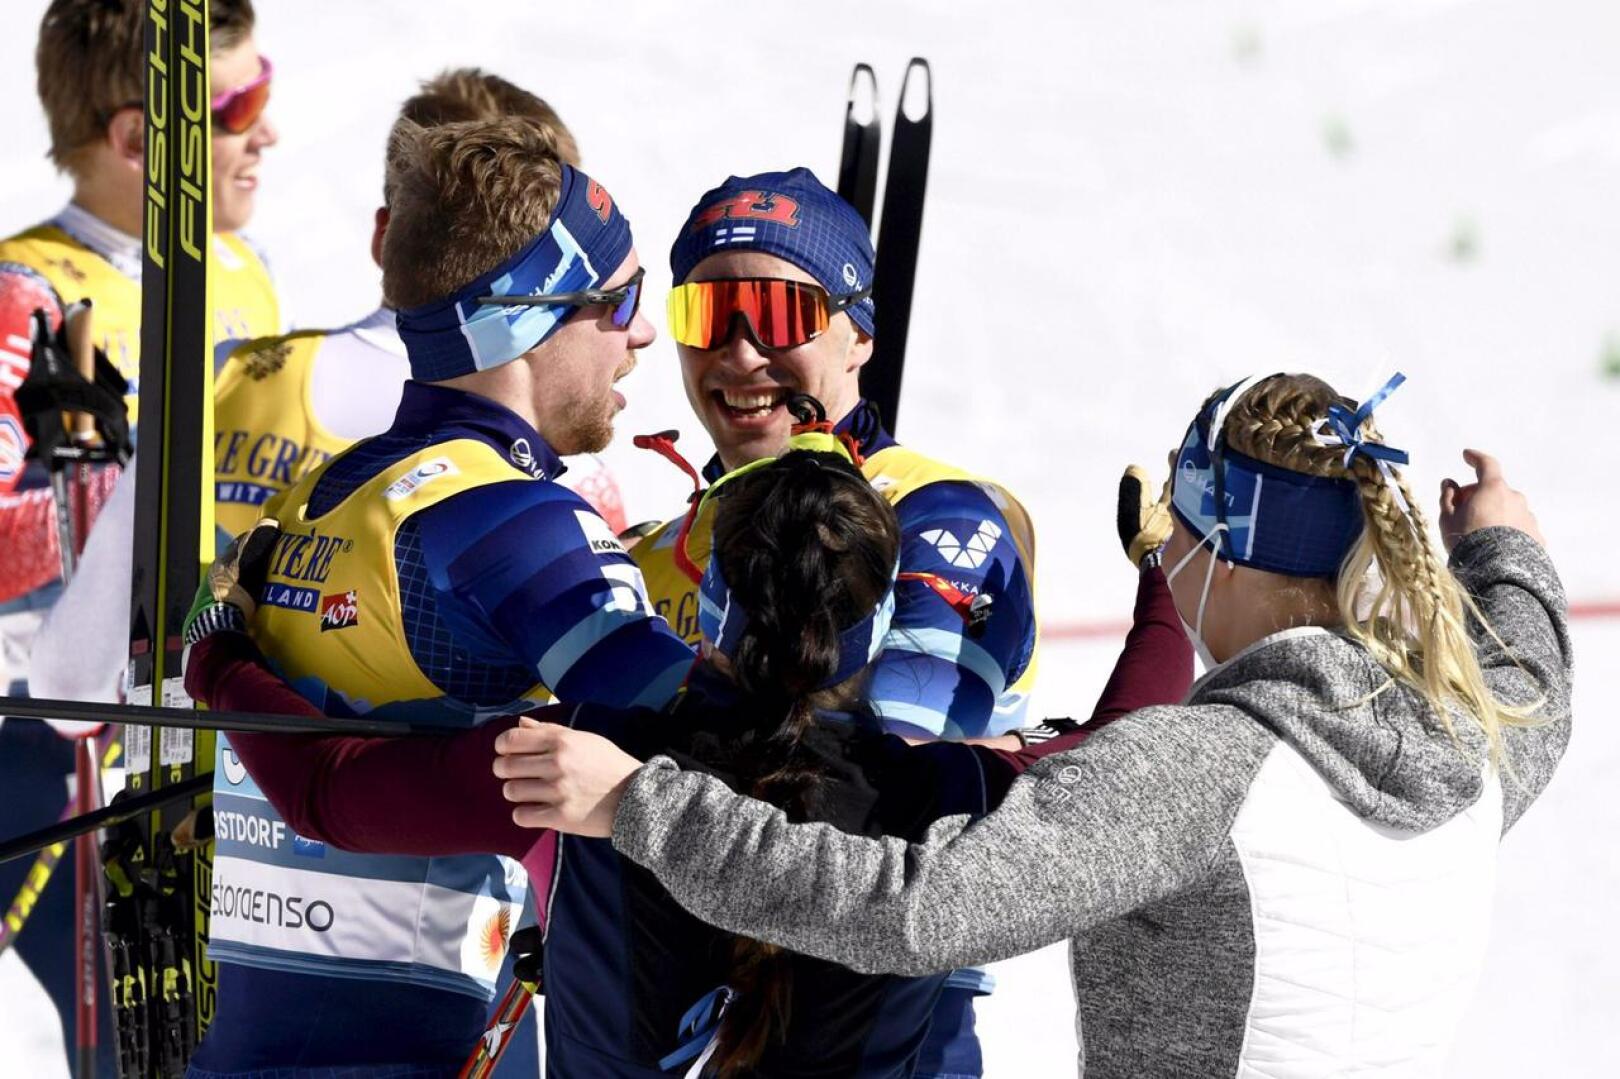 Hopeaa juhlineet Joni Mäki ja Ristomatti Hakola saivat ensimmäiset onnittelut naisten viestissä hiihtäneiltä Krista Pärmäkoskelta ja Jasmi Joensuulta.